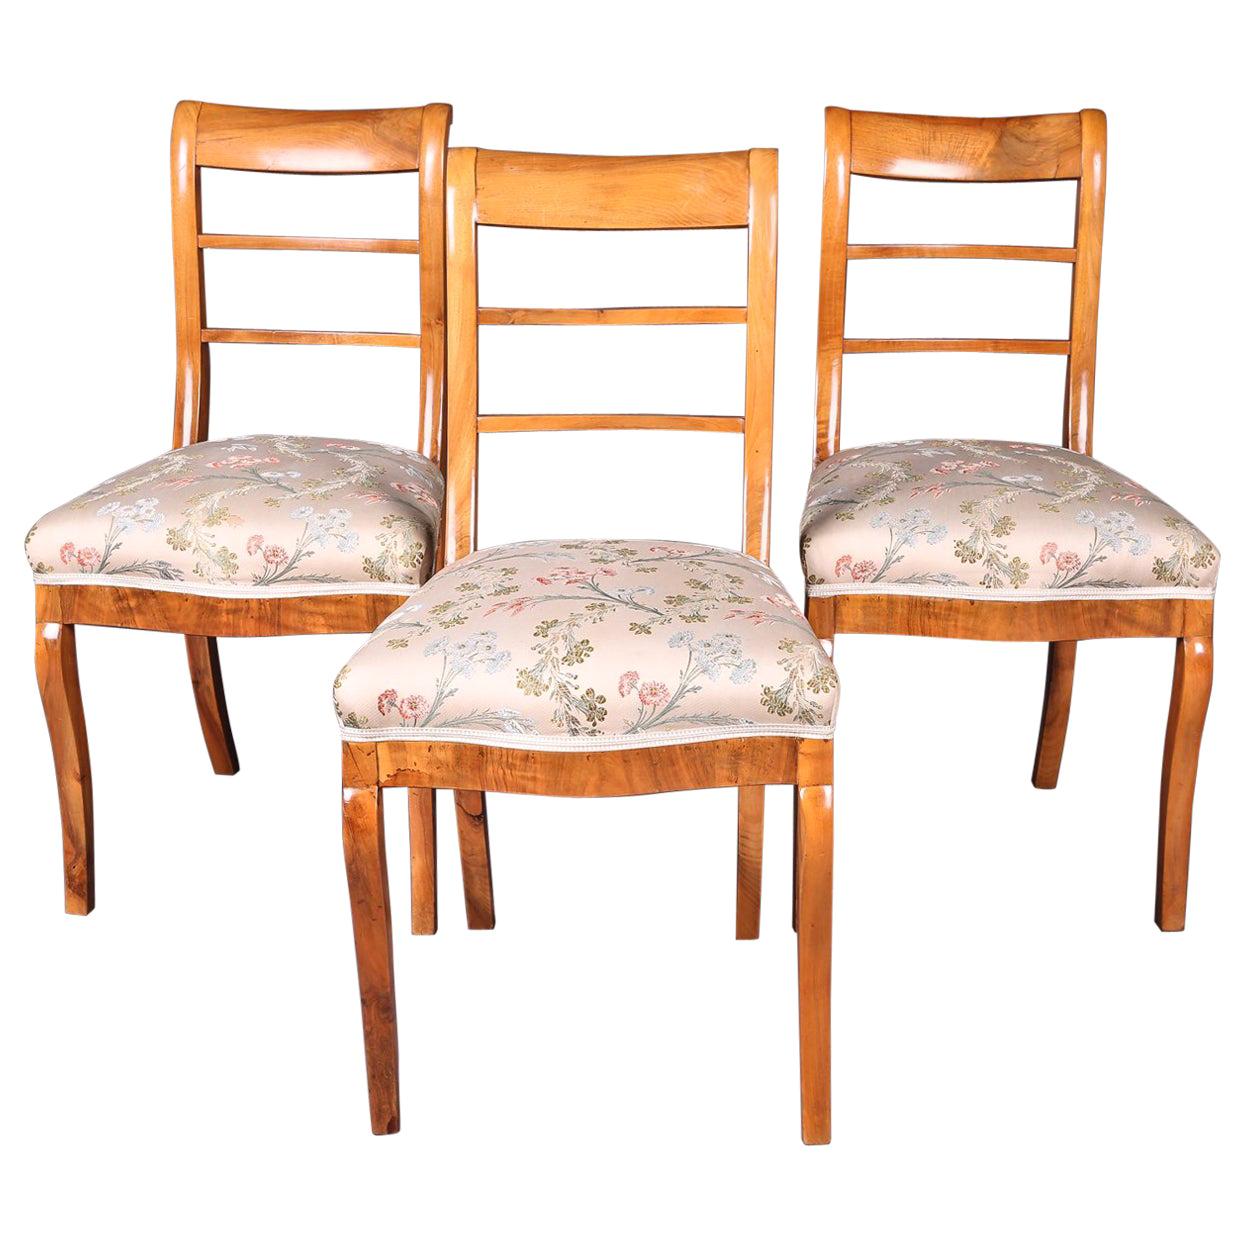 Drei Biedermeier-Sessel mit geschwungenen Beinen, frühes 19. Jahrhundert